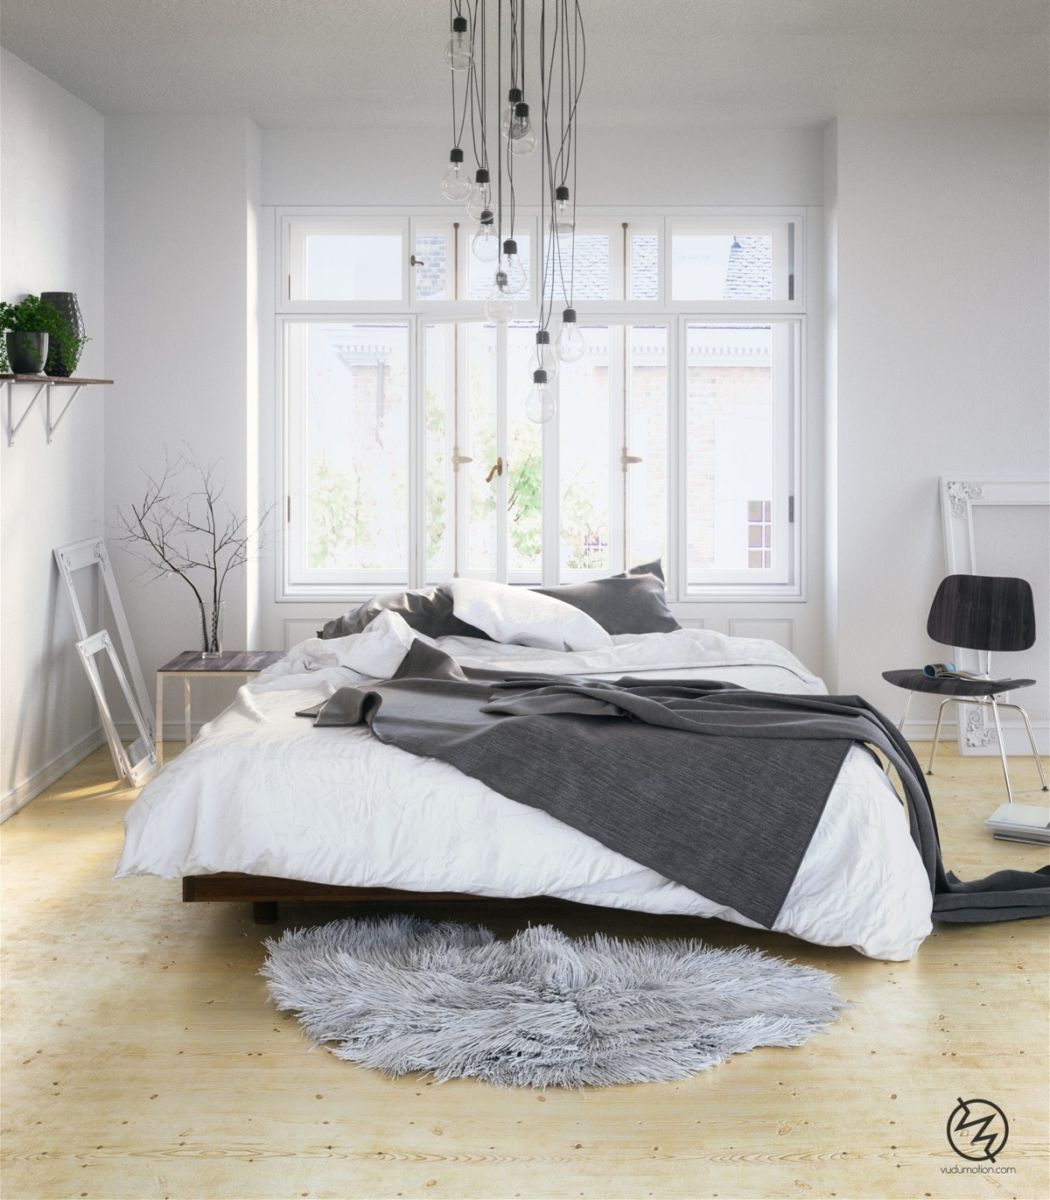 A Scandinavian-inspired bedroom.